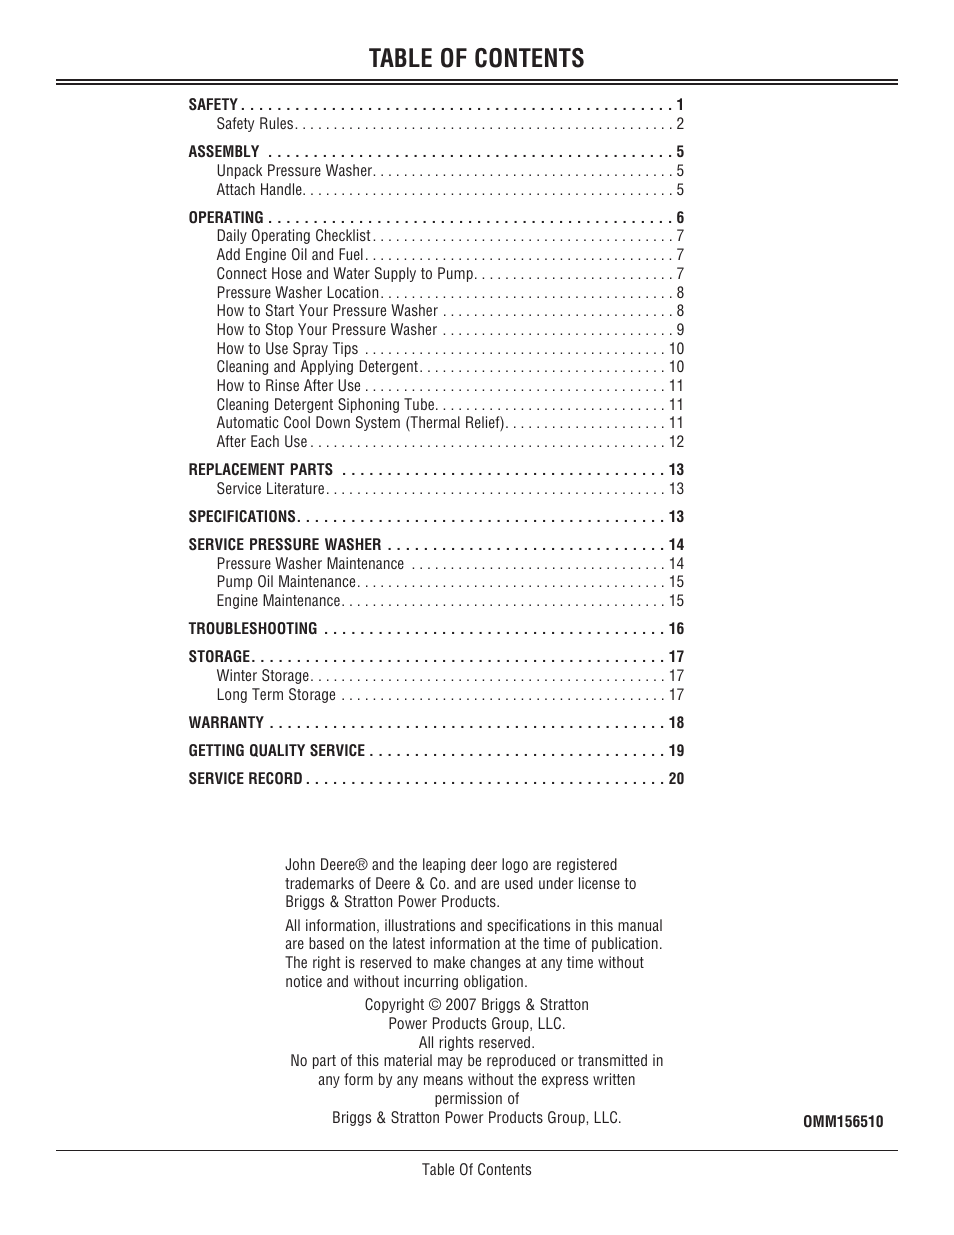 John Deere OMM156510 User Manual | Page 4 / 24